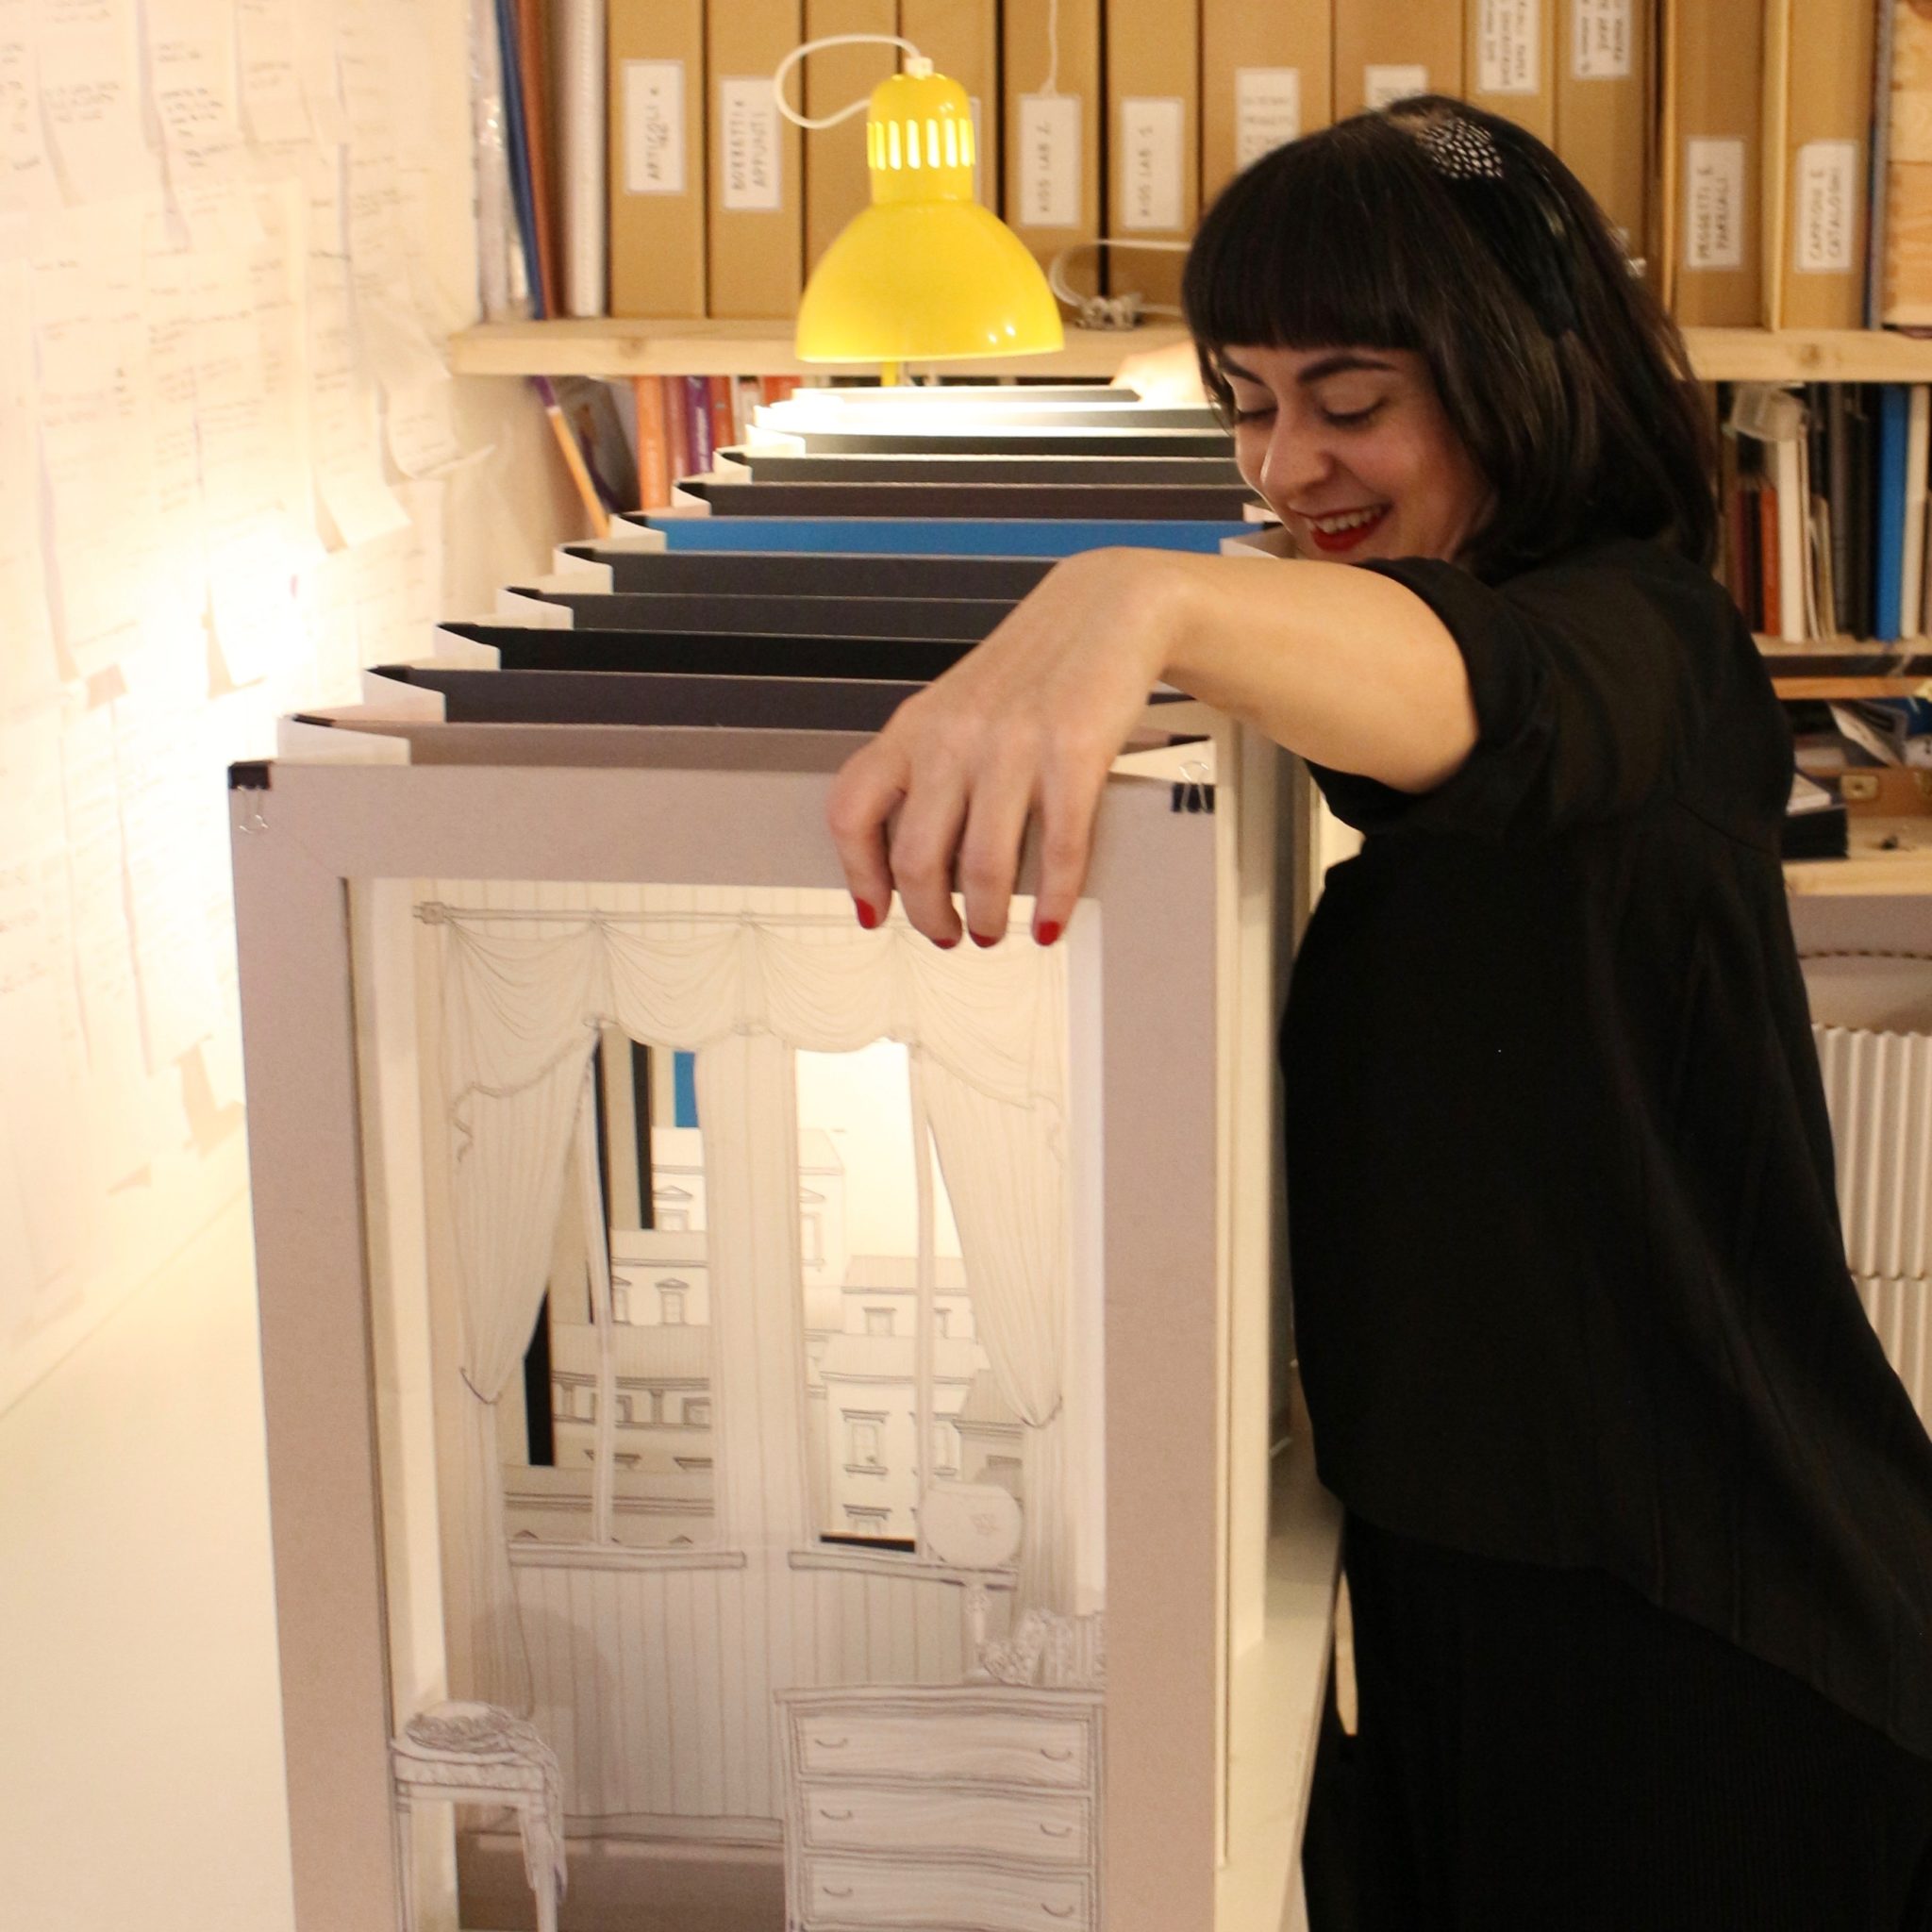 Si definisce paper engineer: Annalisa Mintus realizza mondi in cartotecnica, libri d'artista e scenografie pop-up. L'abbiamo incontrata nel suo laboratorio